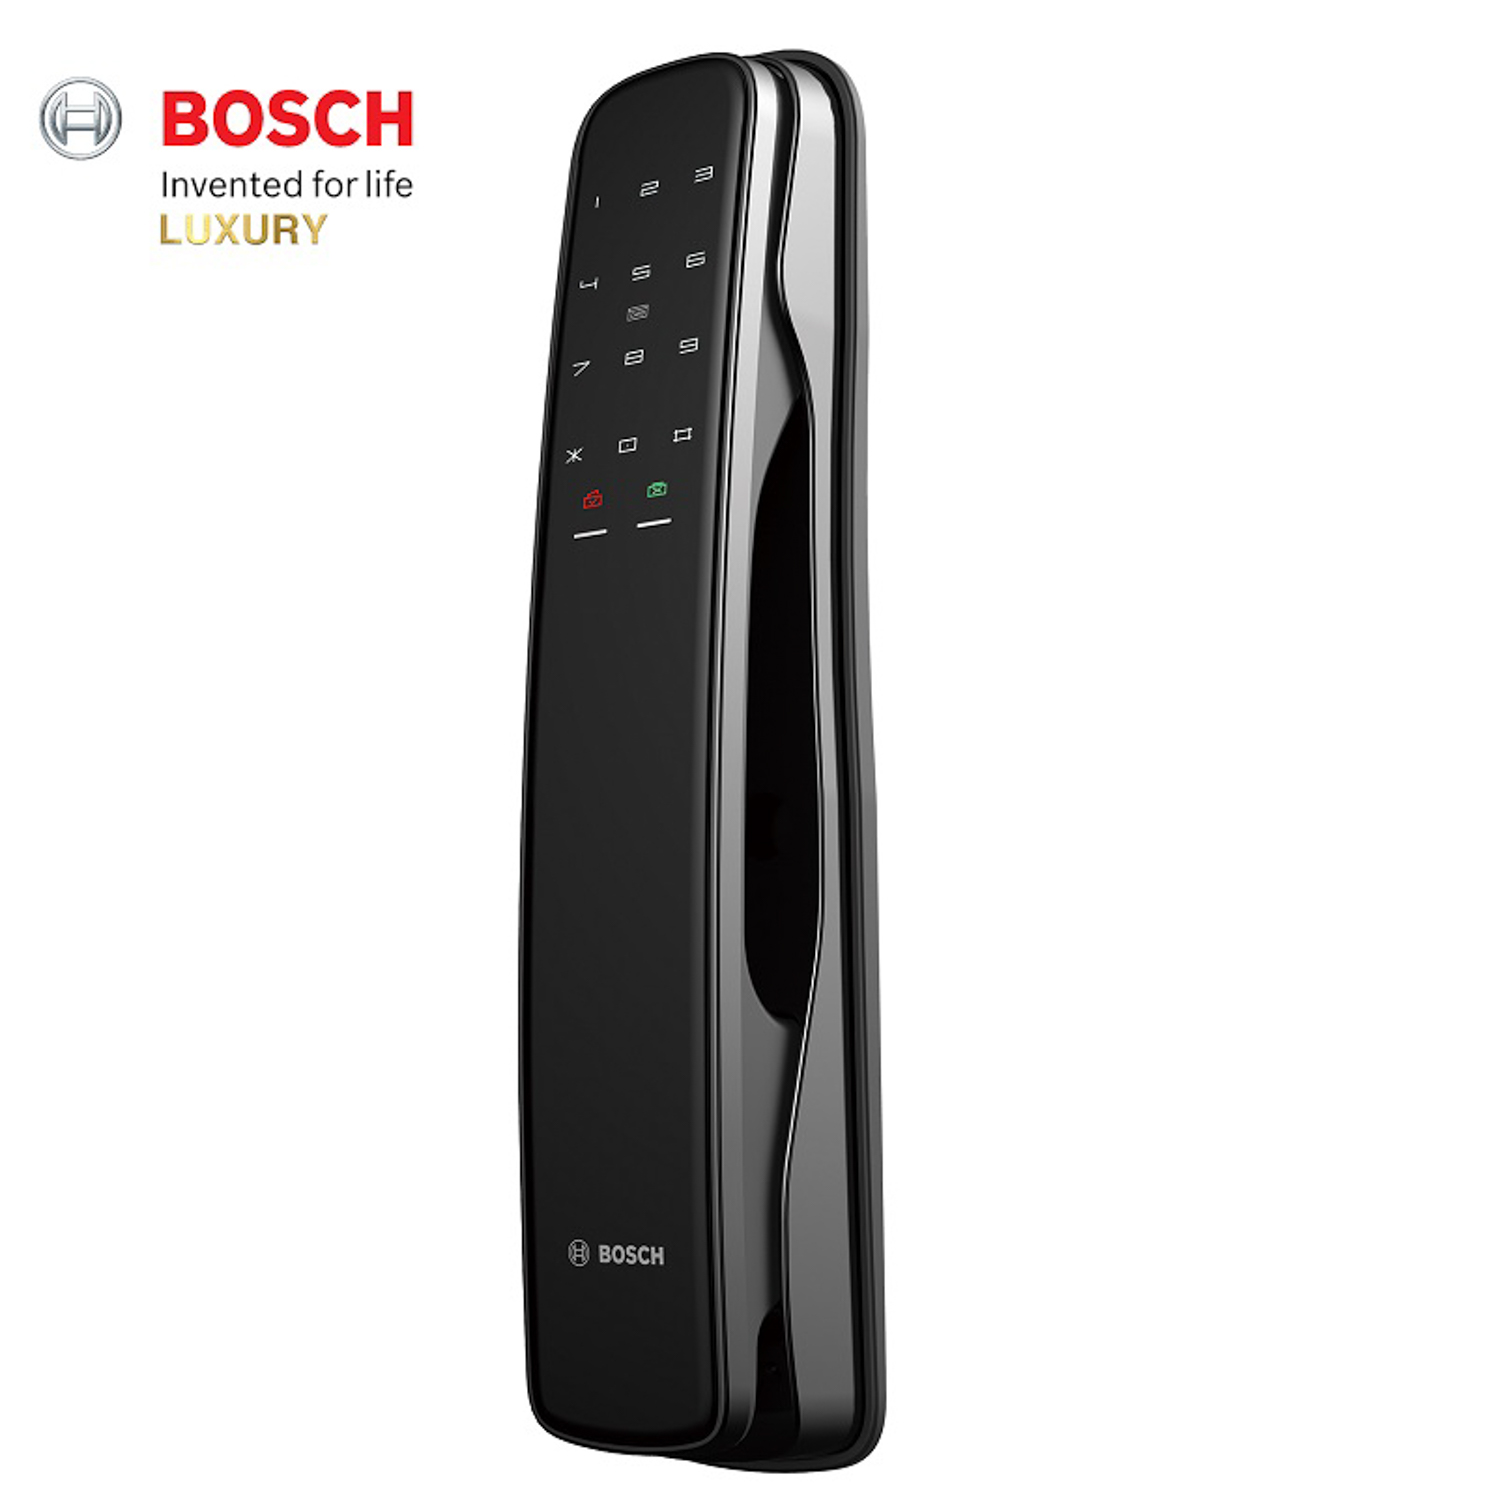 Khóa điện tử Bosch GD.EL 800A EU Gray được sản xuất theo tiêu chuẩn chất lượng Đức